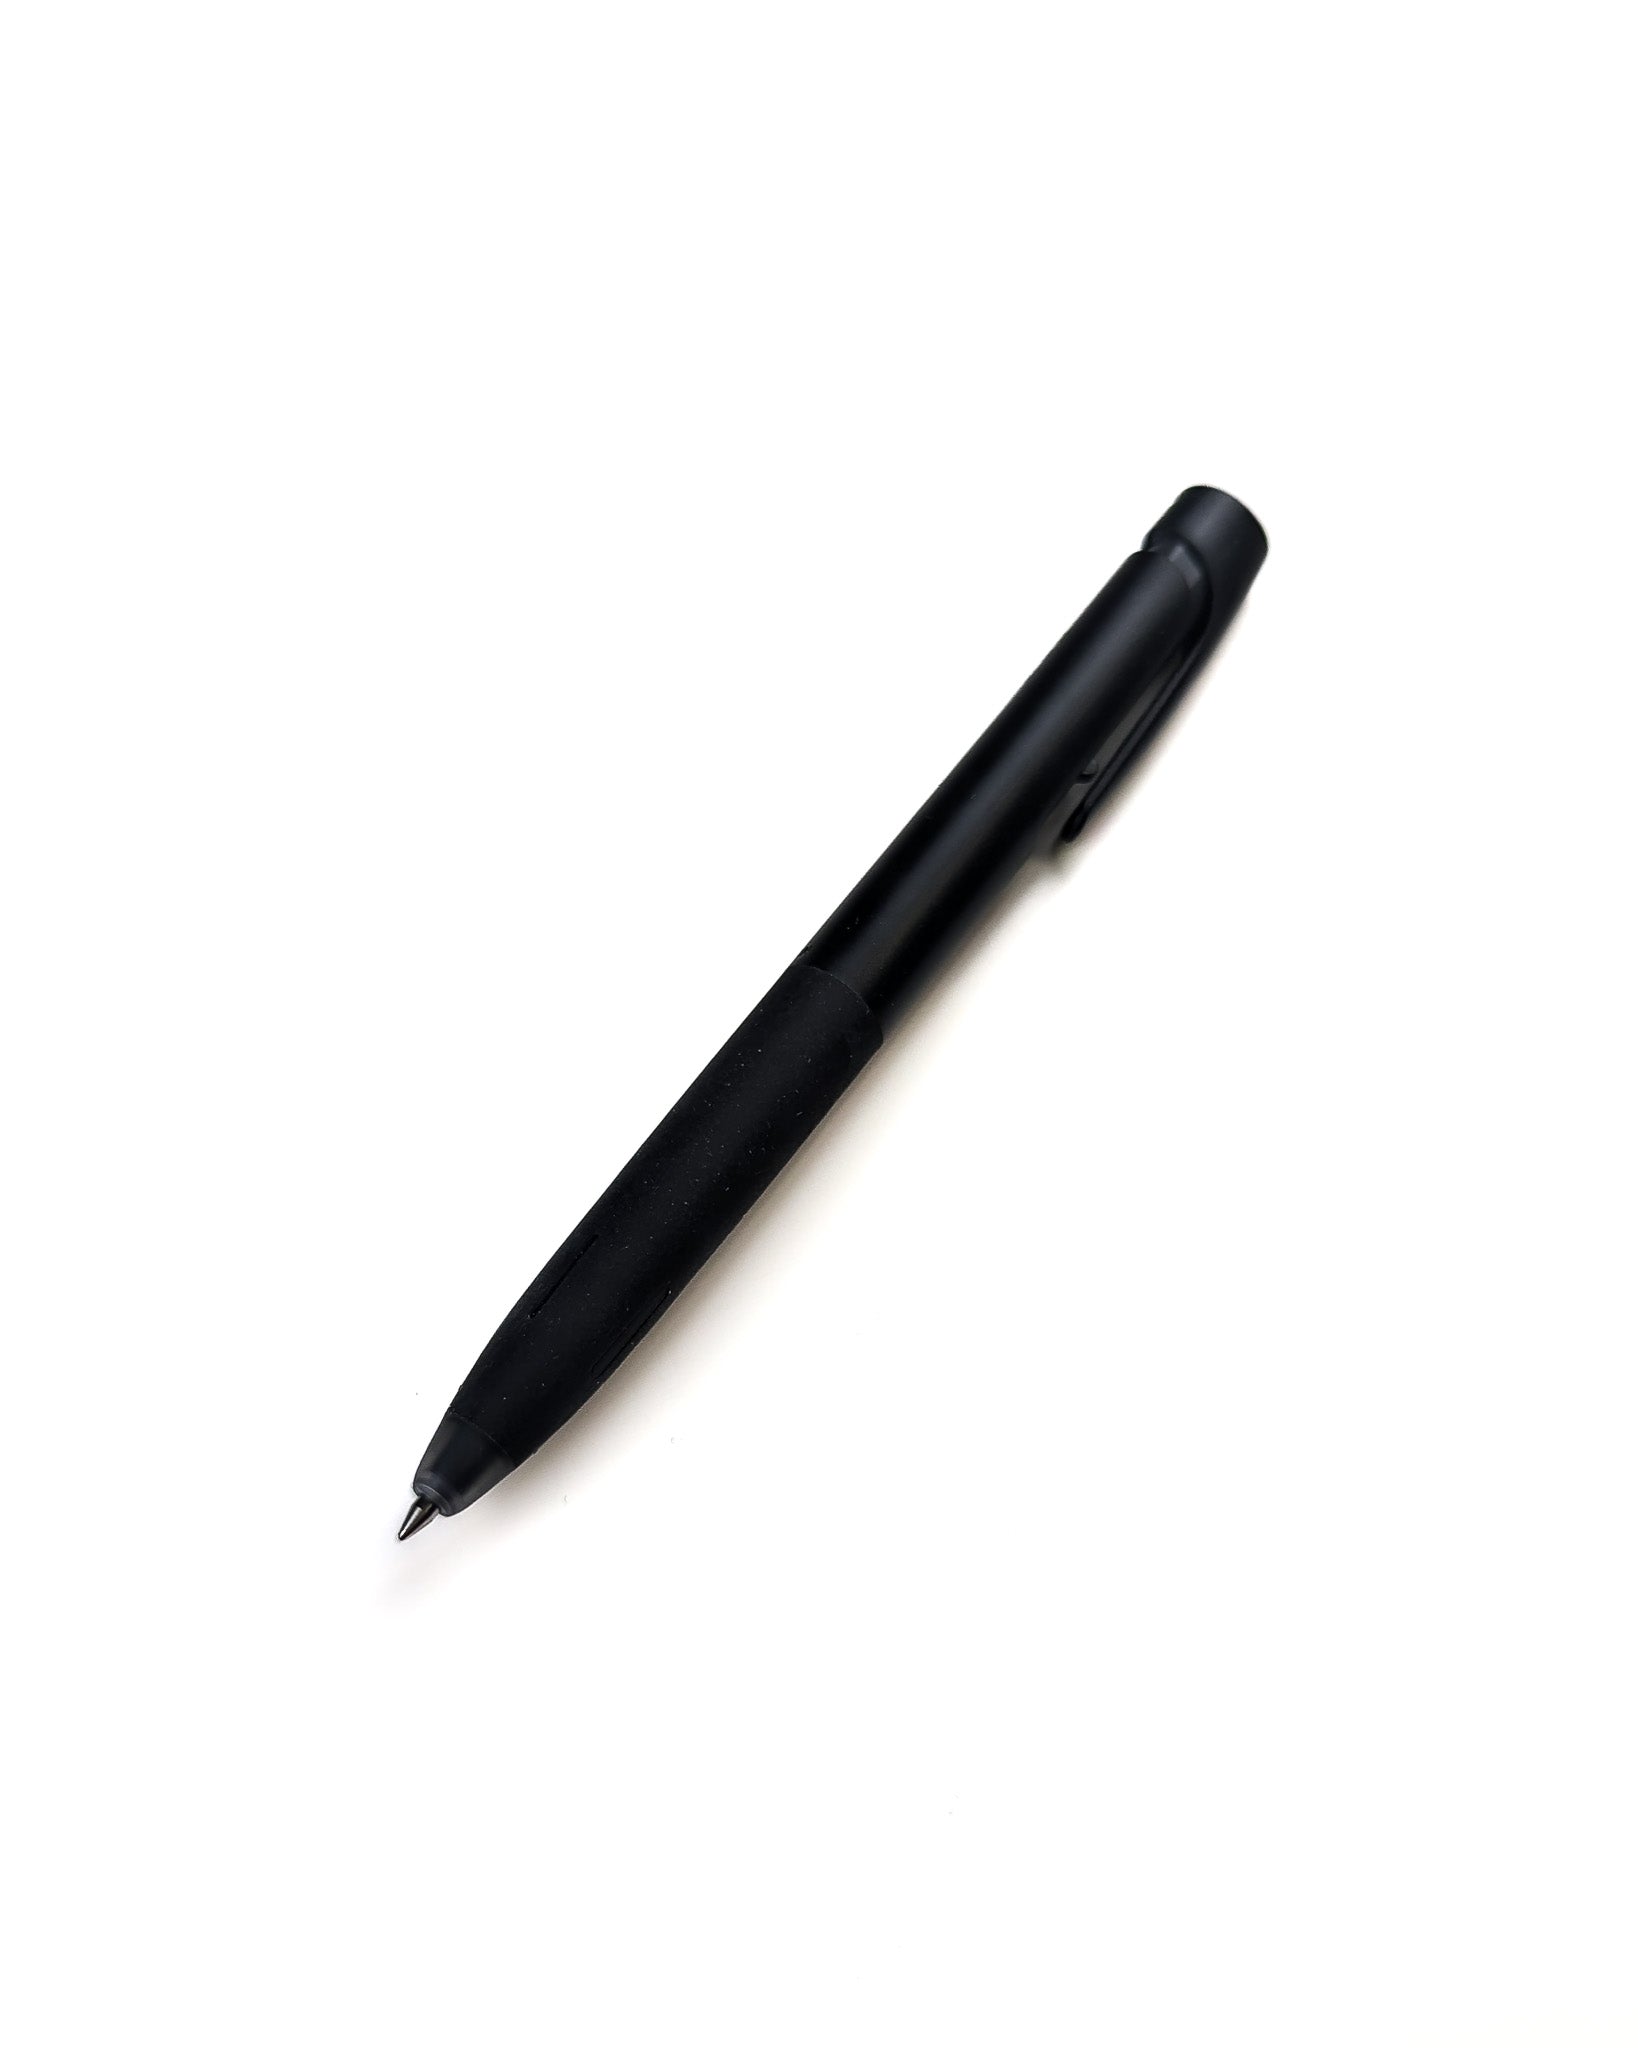 Zebra® black ink gel pen with 0.7 mm point tip.